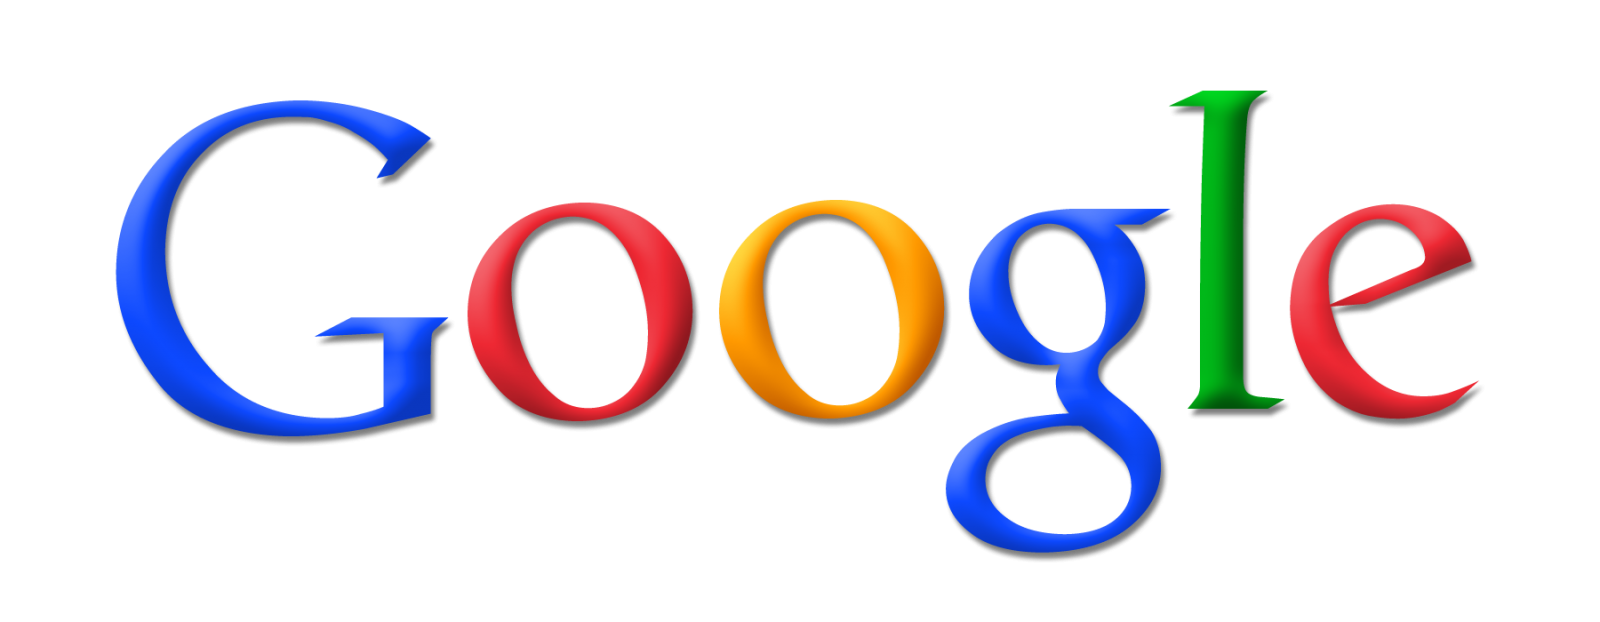 Googlel logo